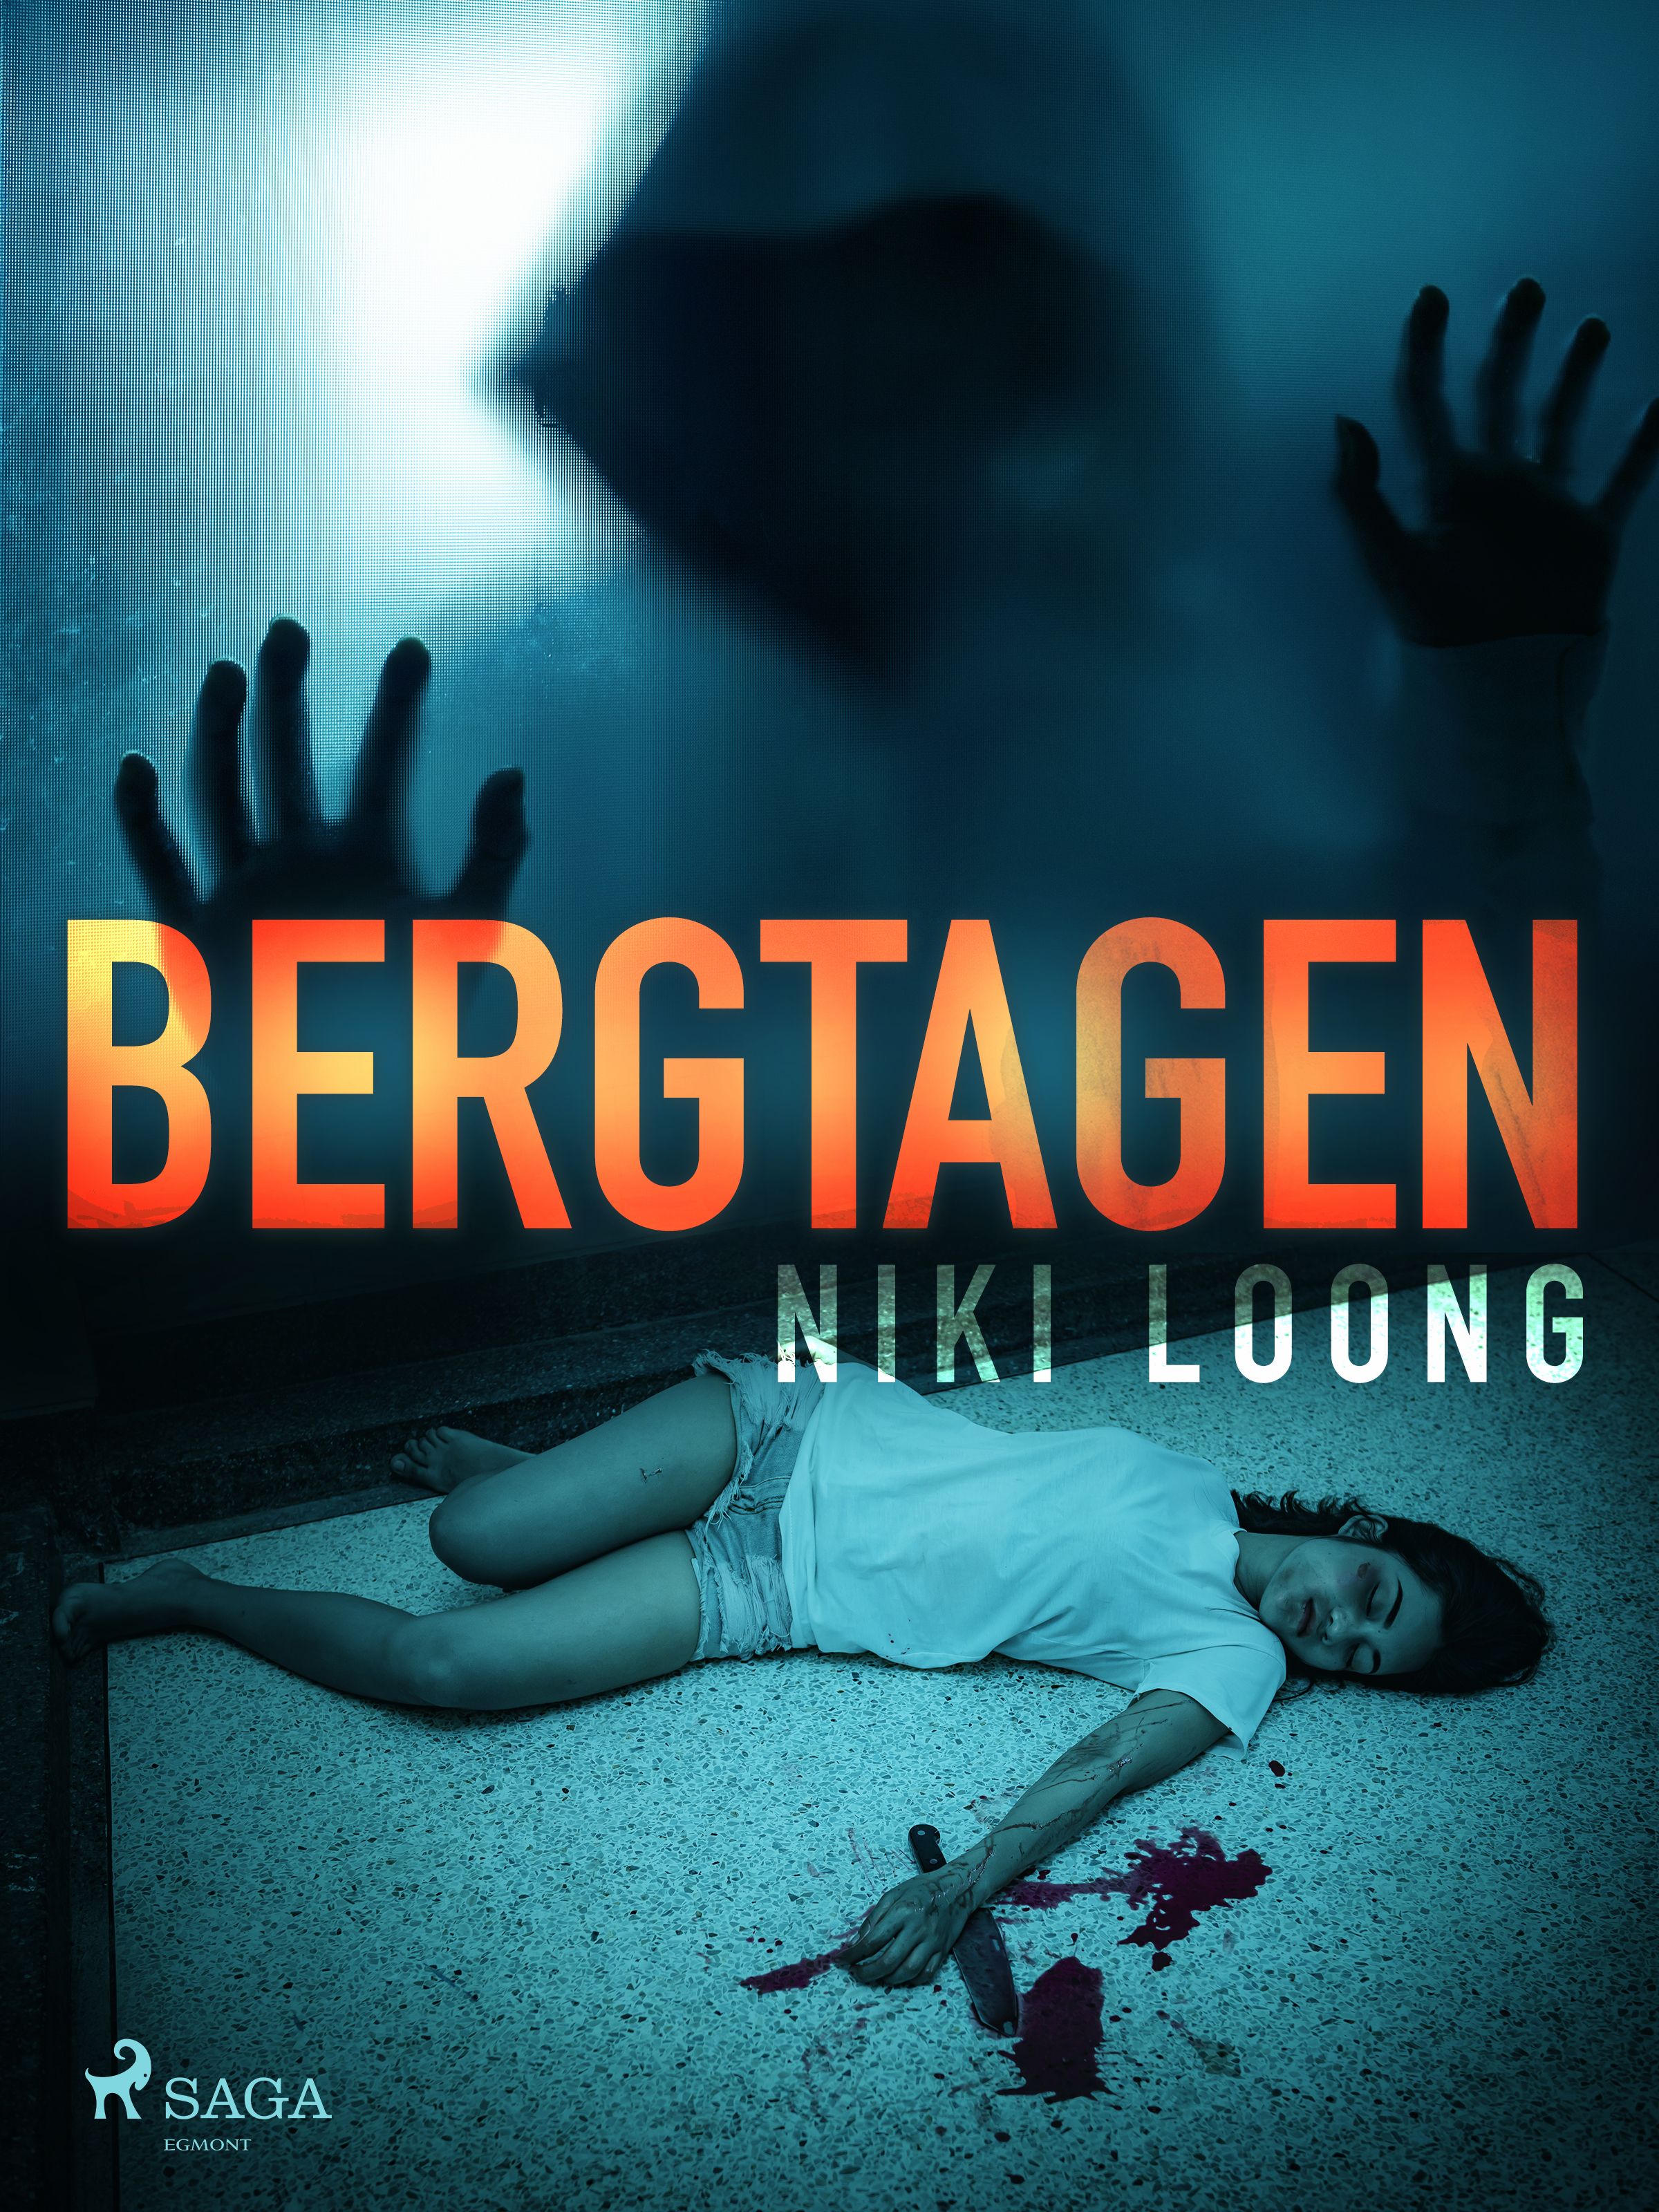 Bergtagen, eBook by Niki Loong